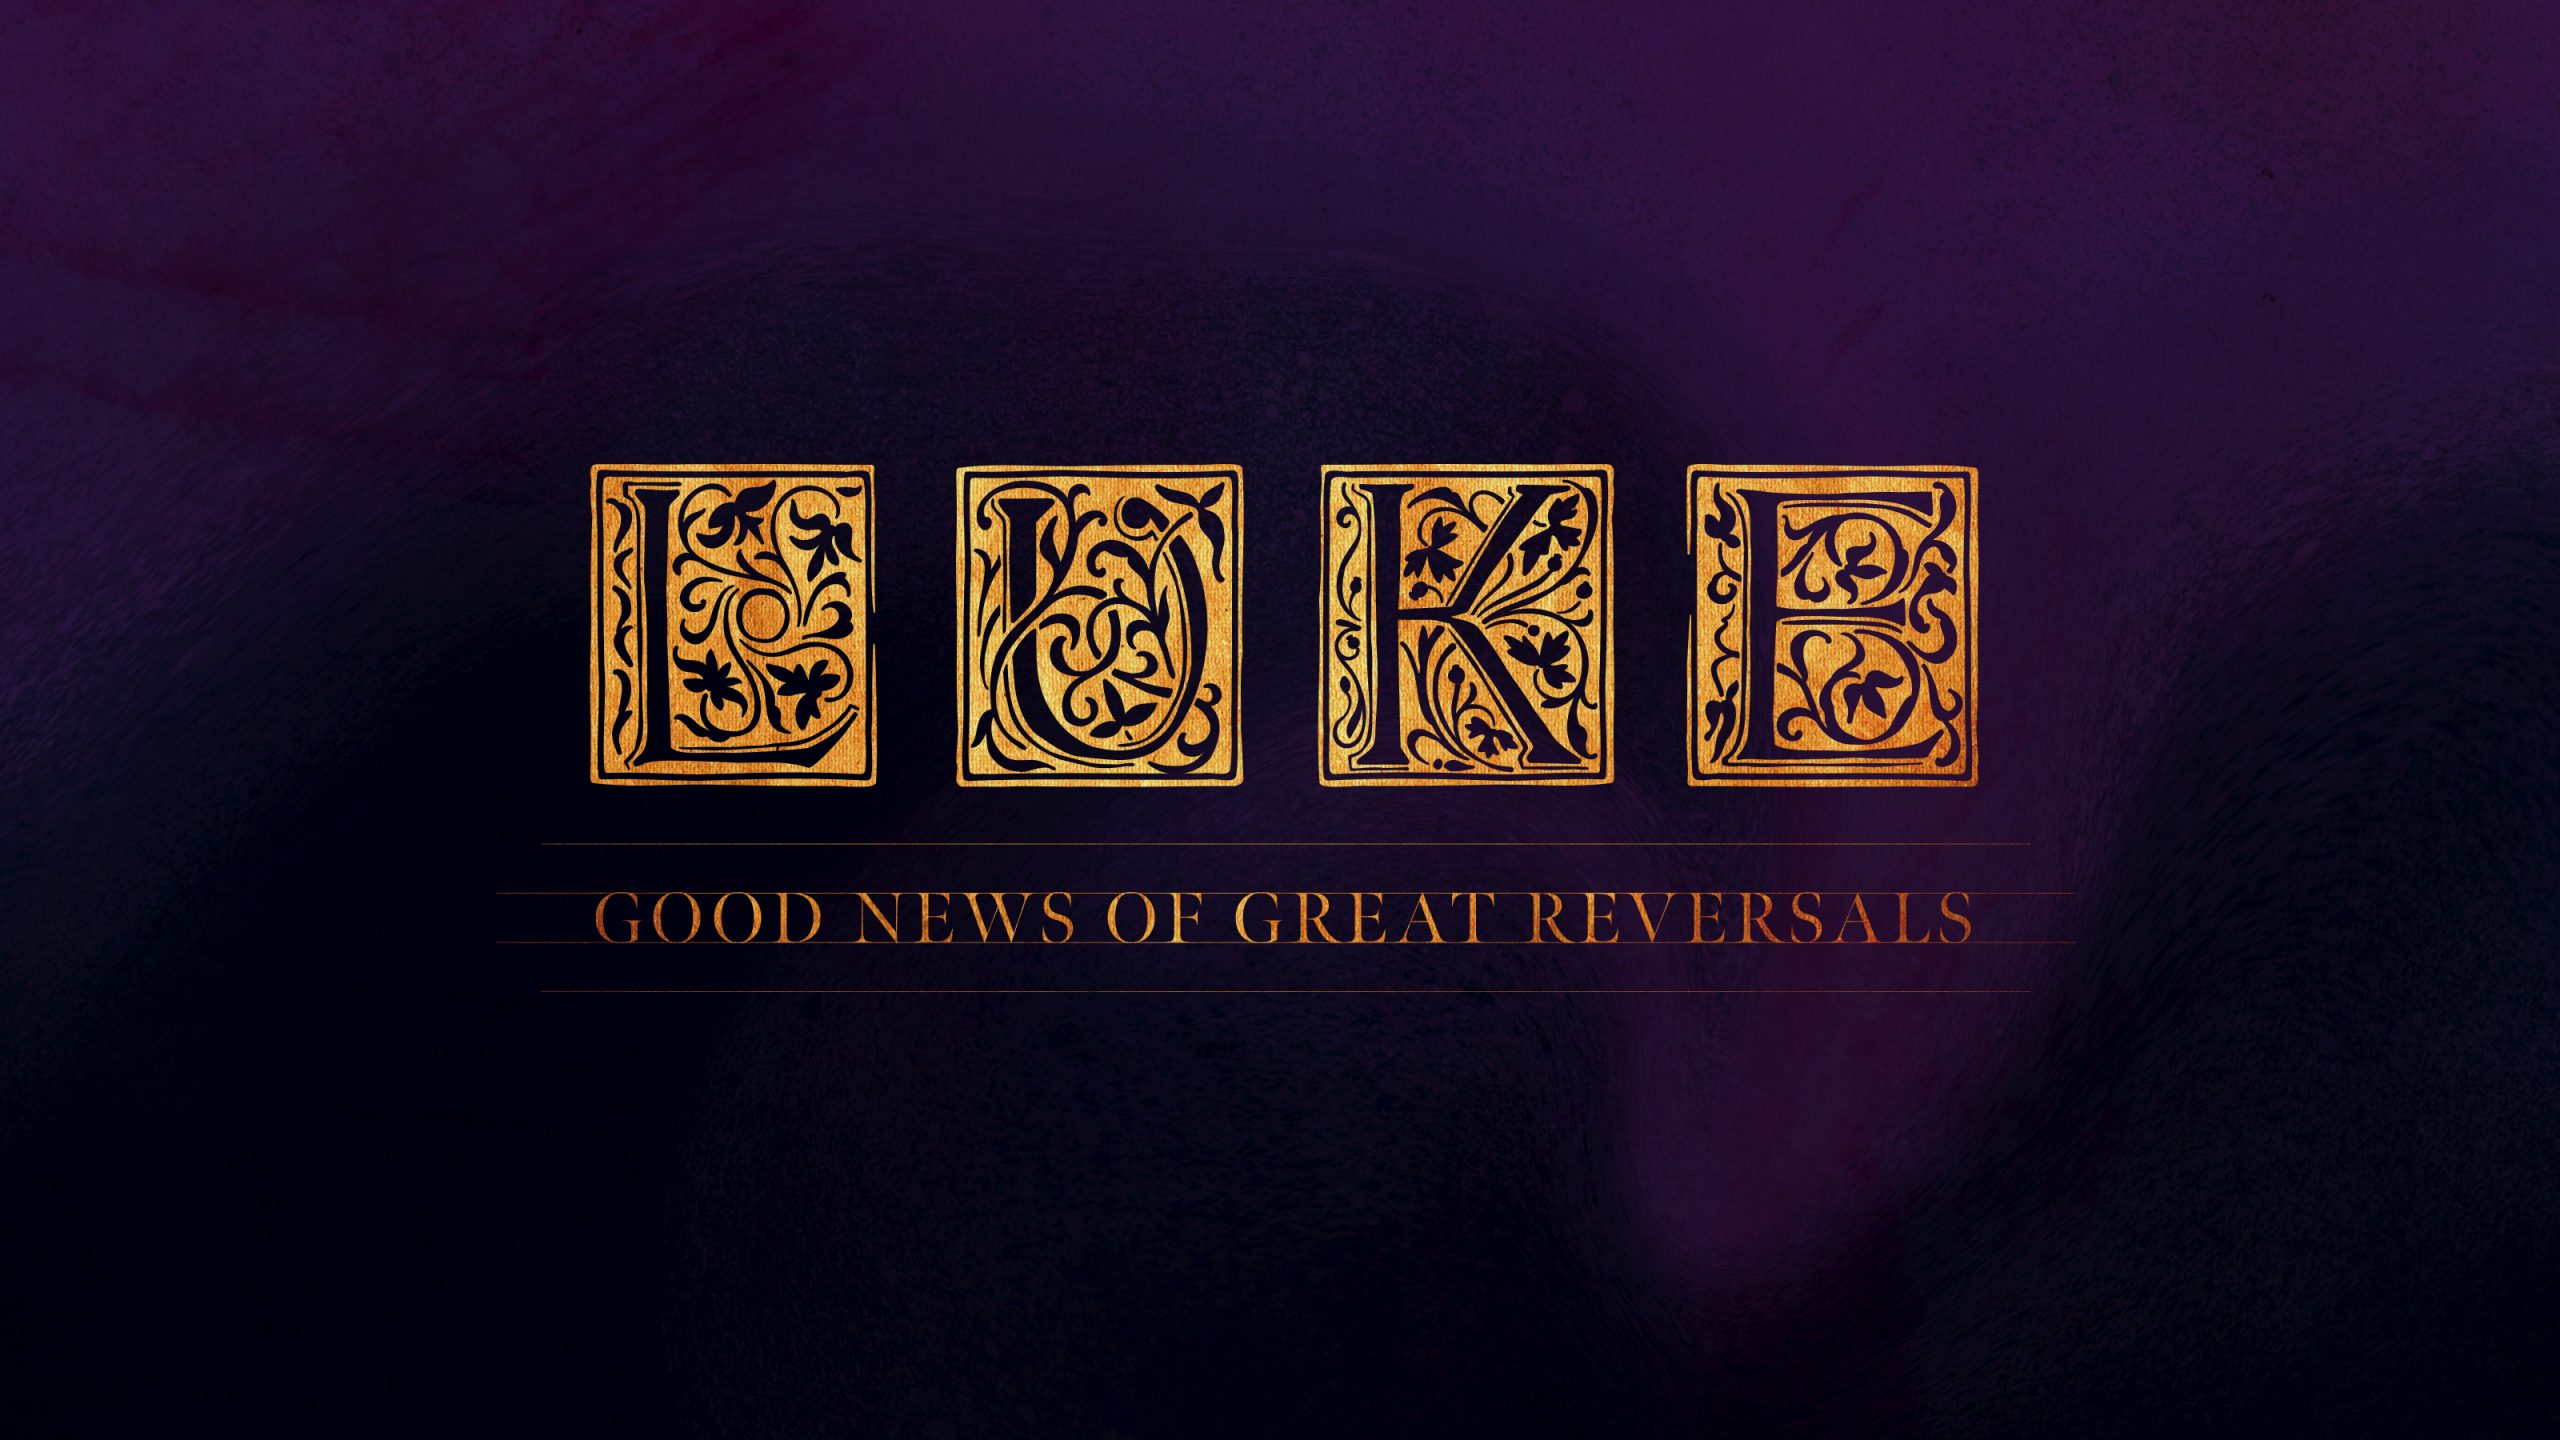 Luke: Good News of Great Reversals